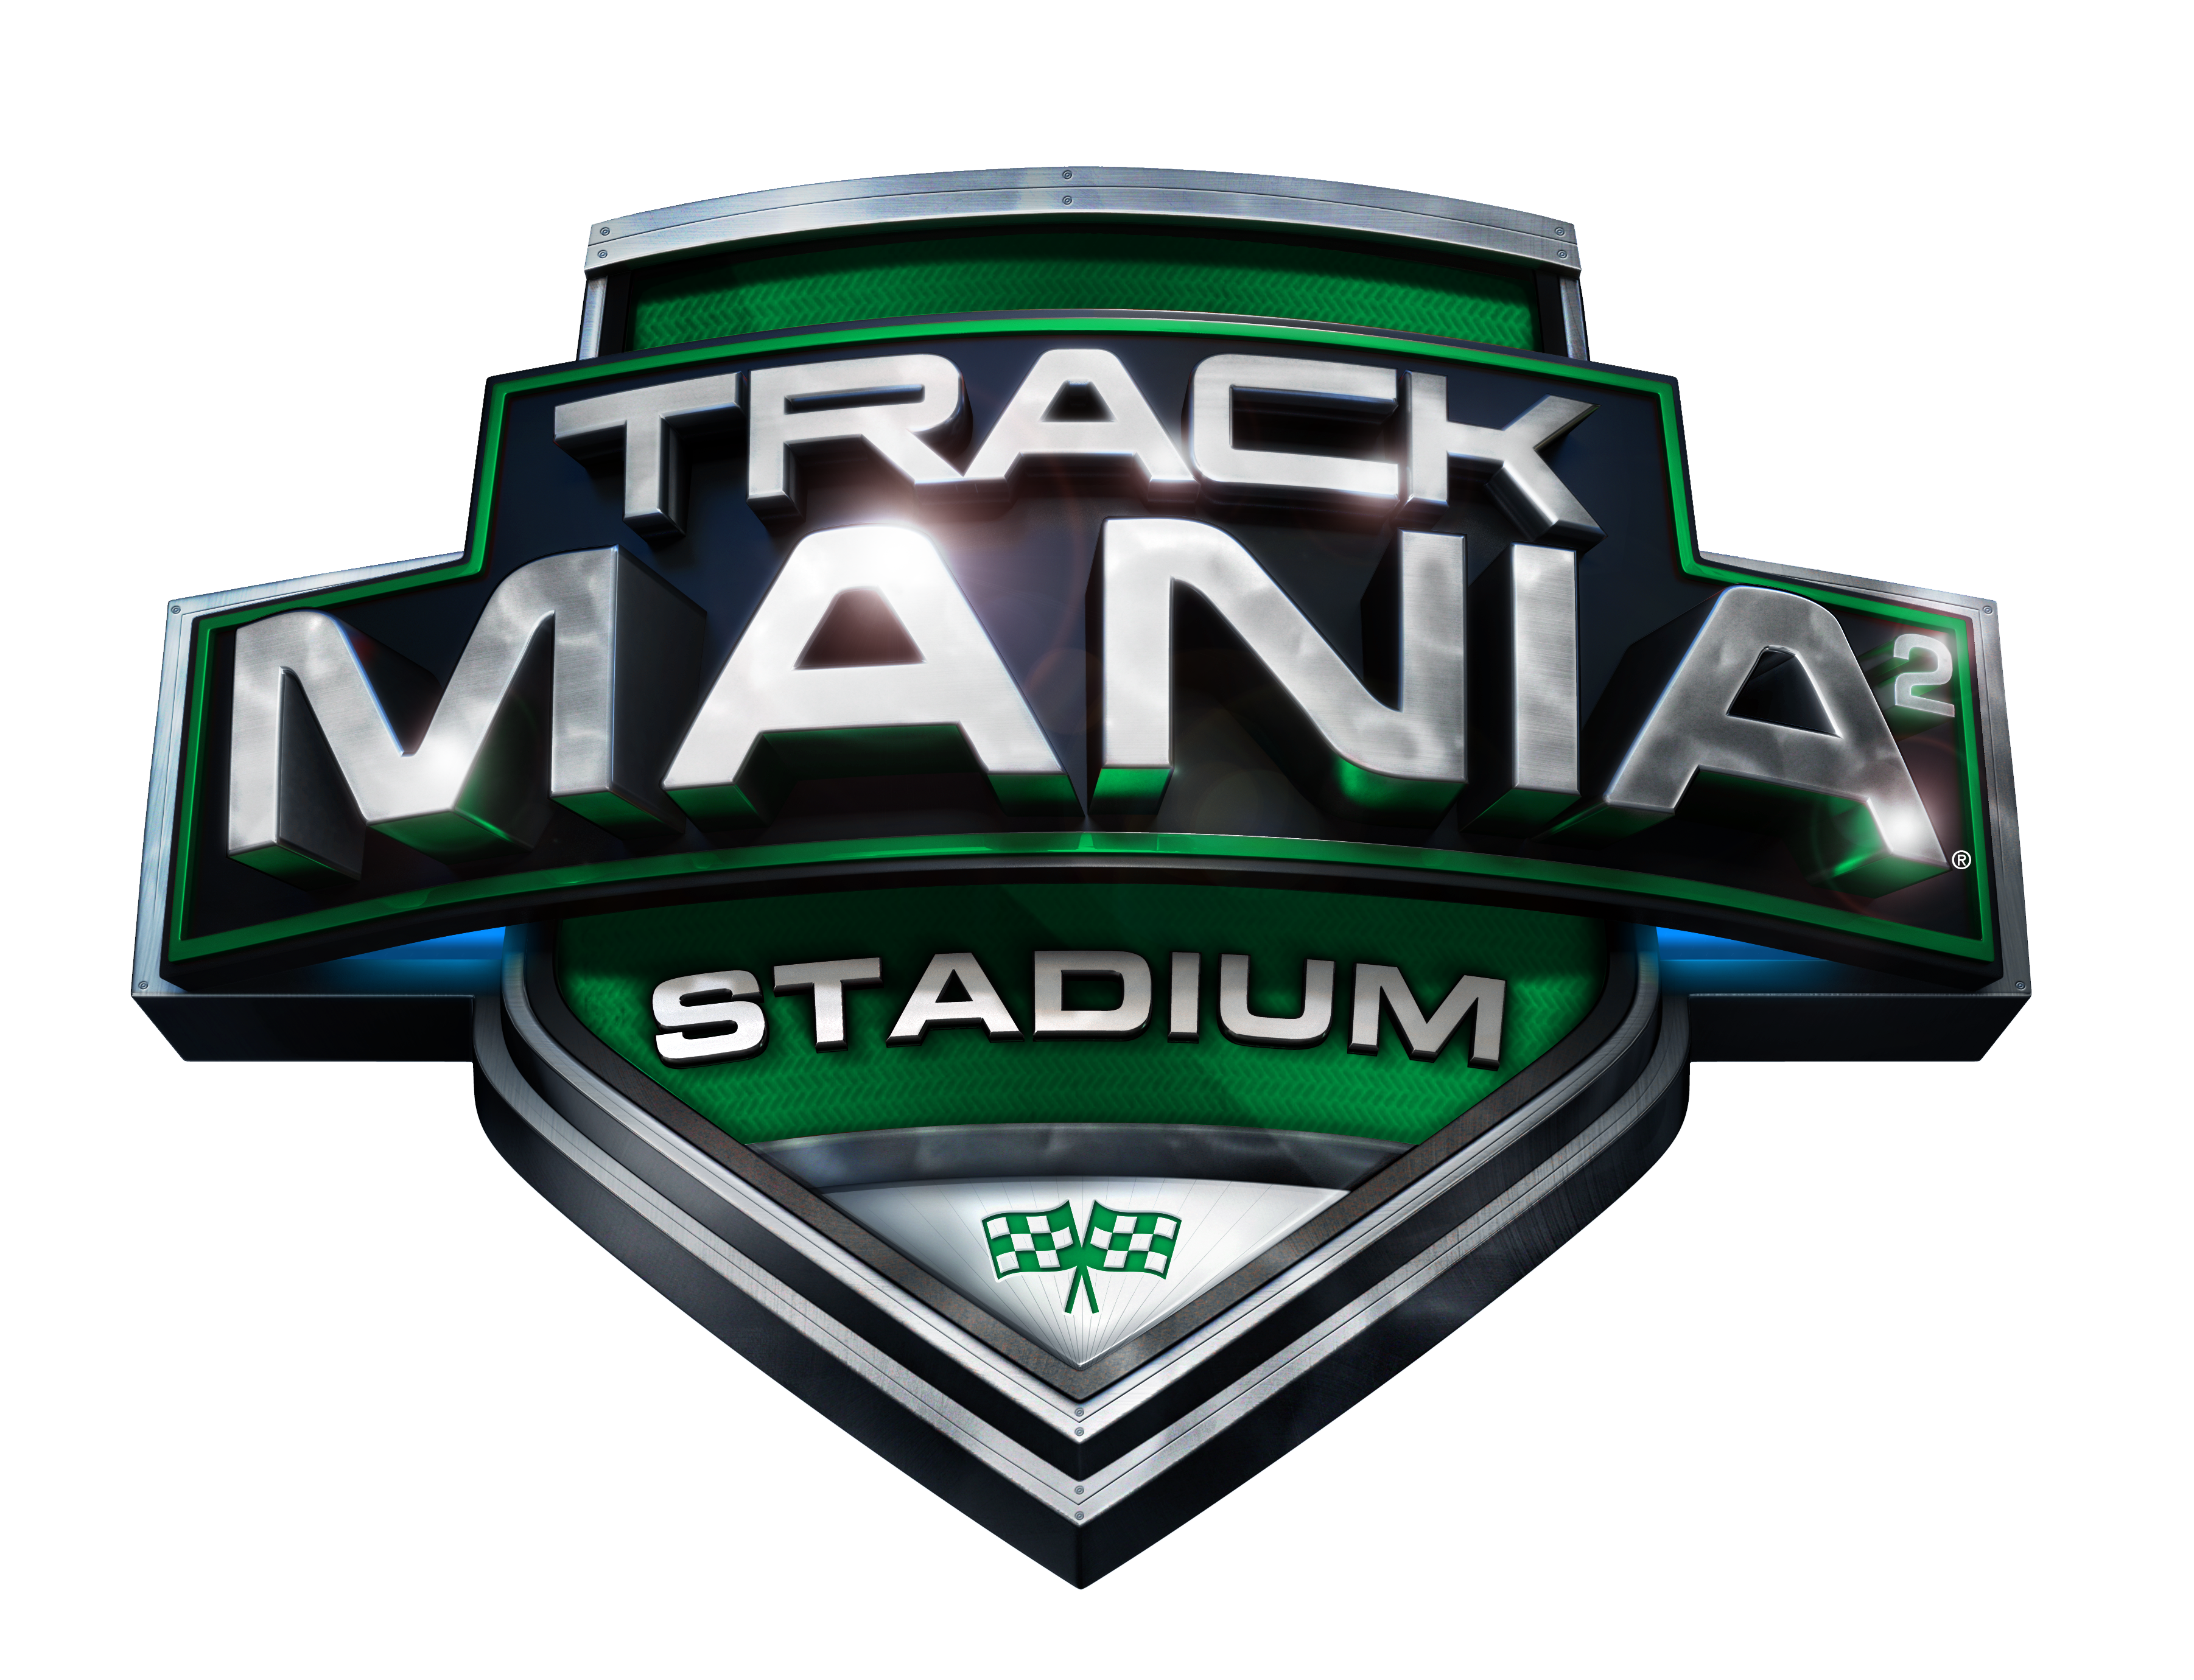 trackmania 2 stadium